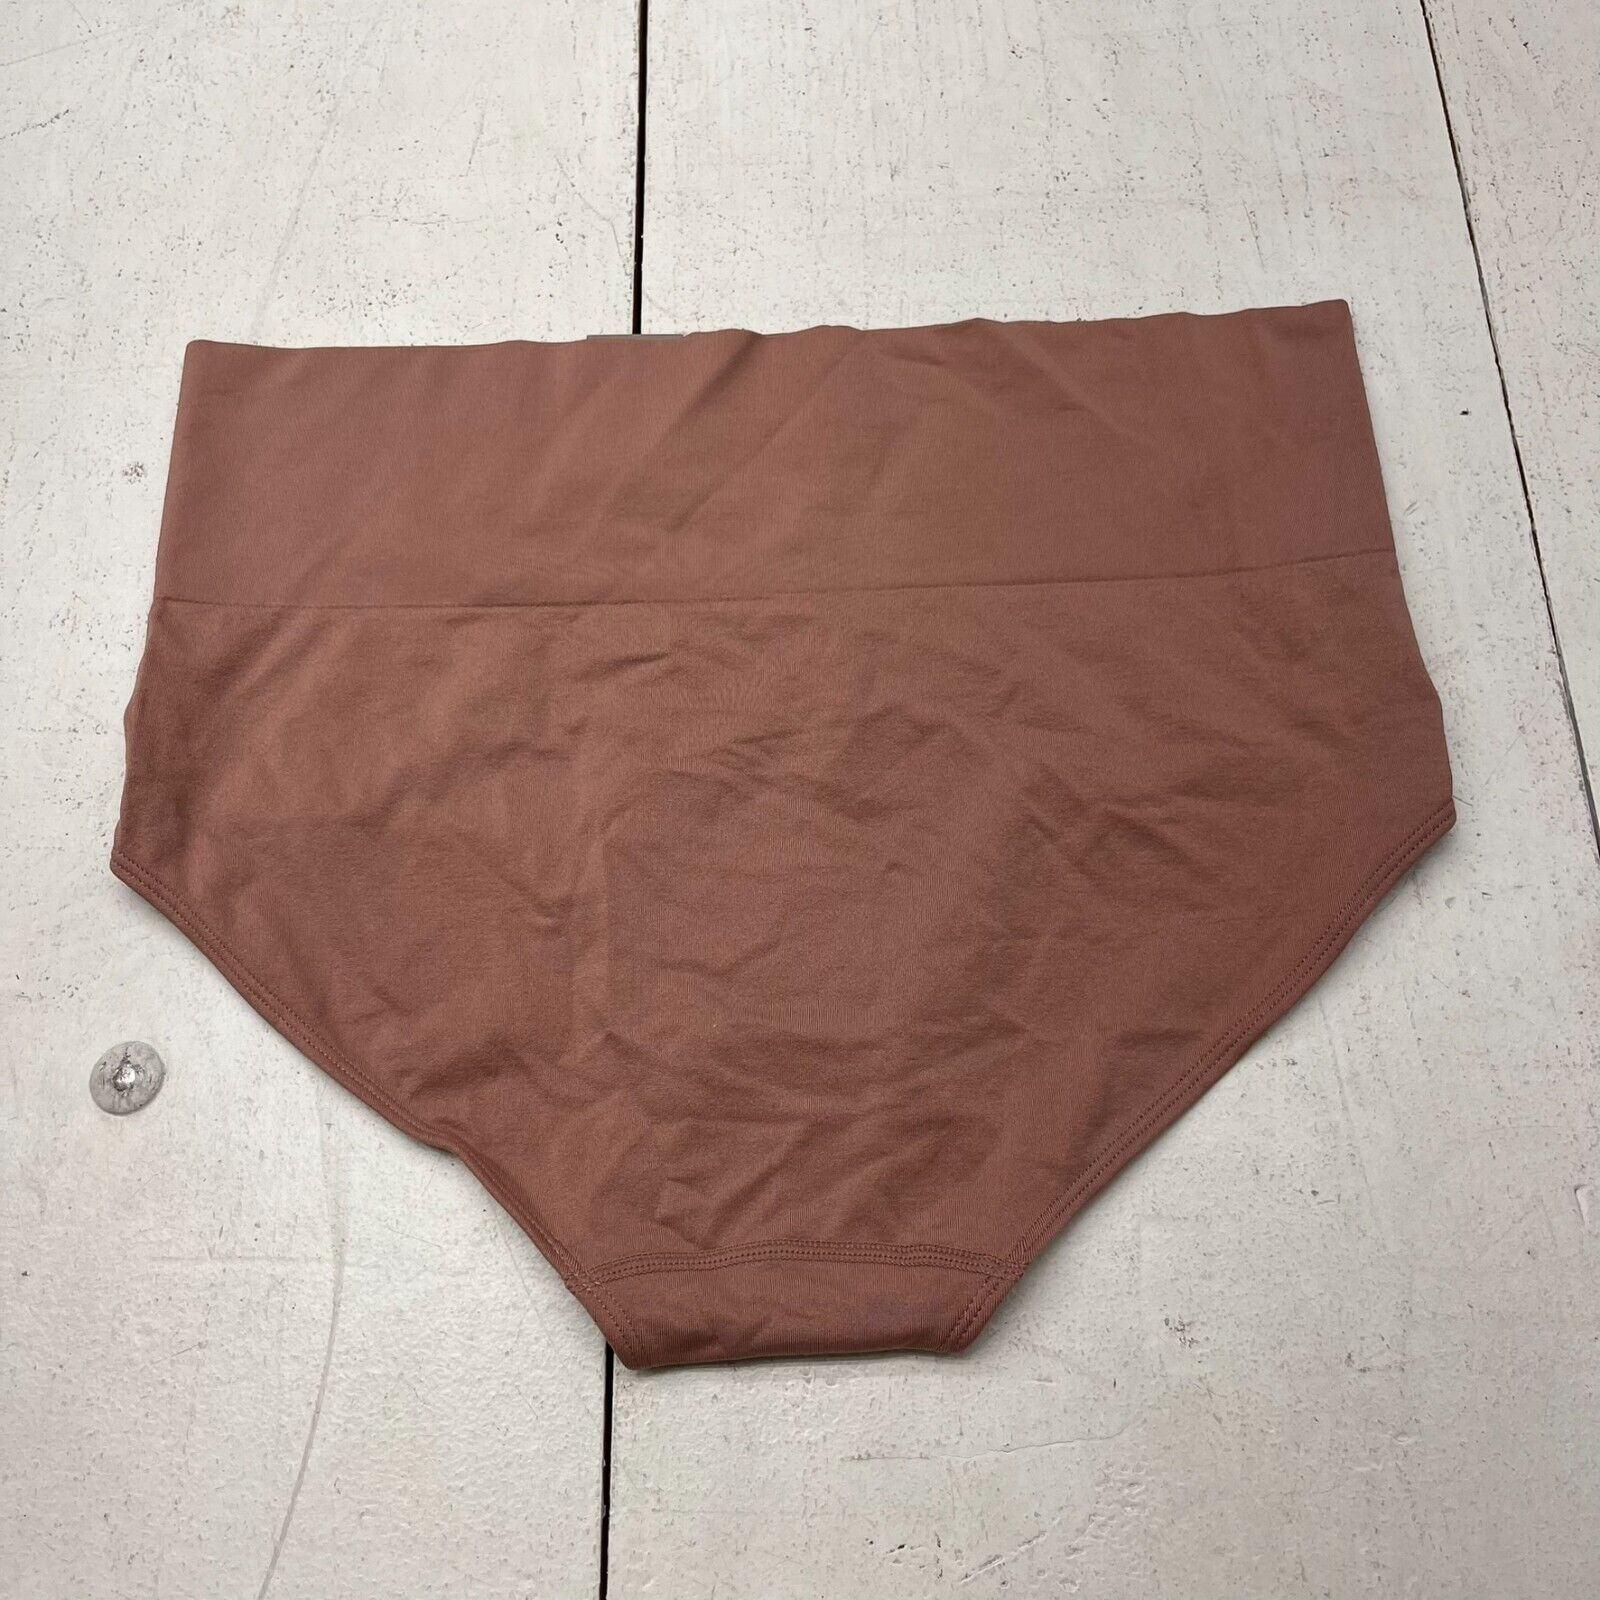 Auden Rust Seamless Brief Underwear Women's Size 1X NEW - beyond exchange